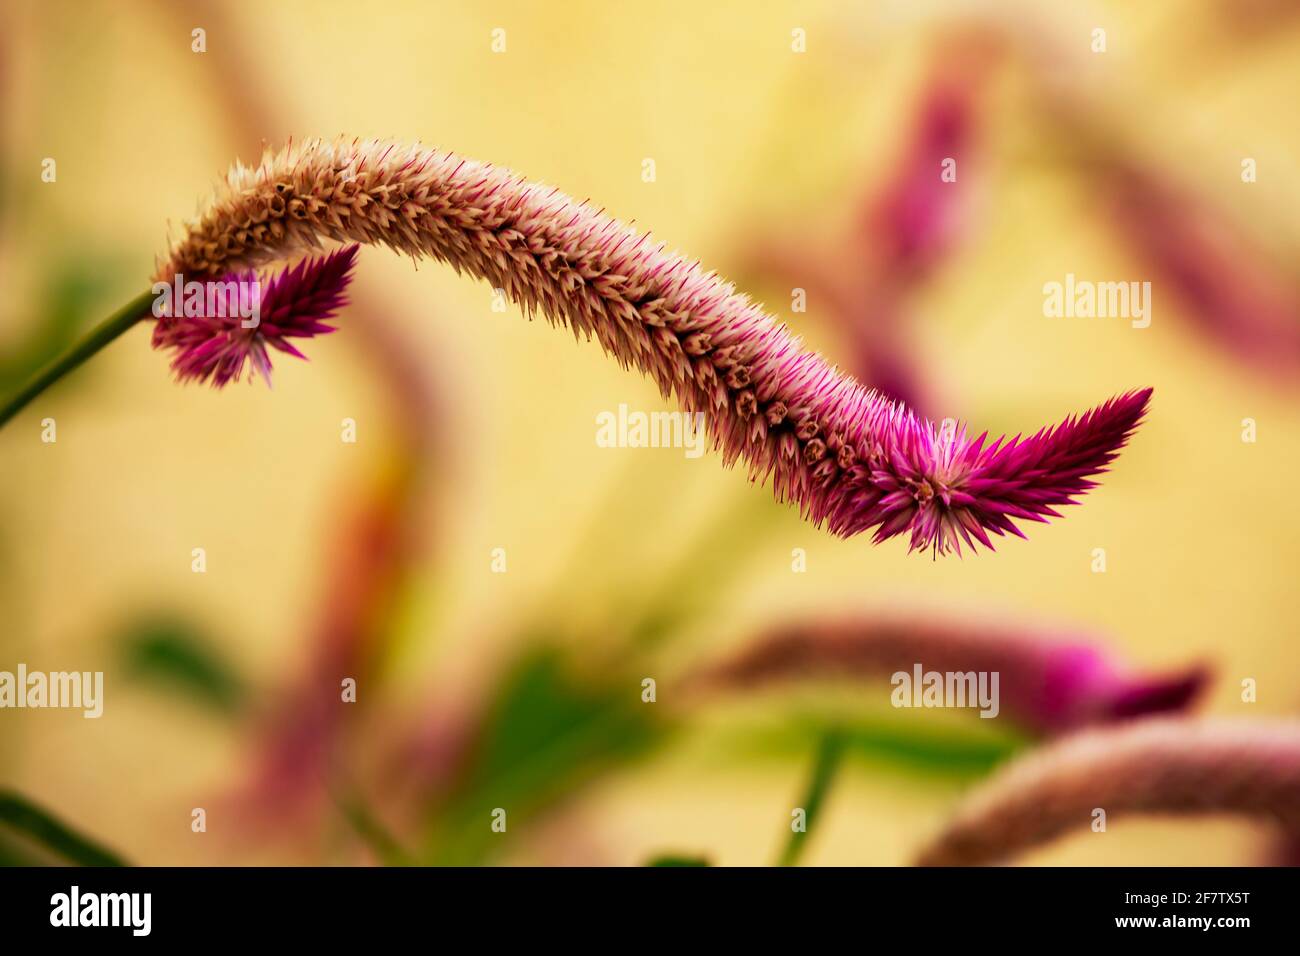 macro shot of Amaranthus Stock Photo